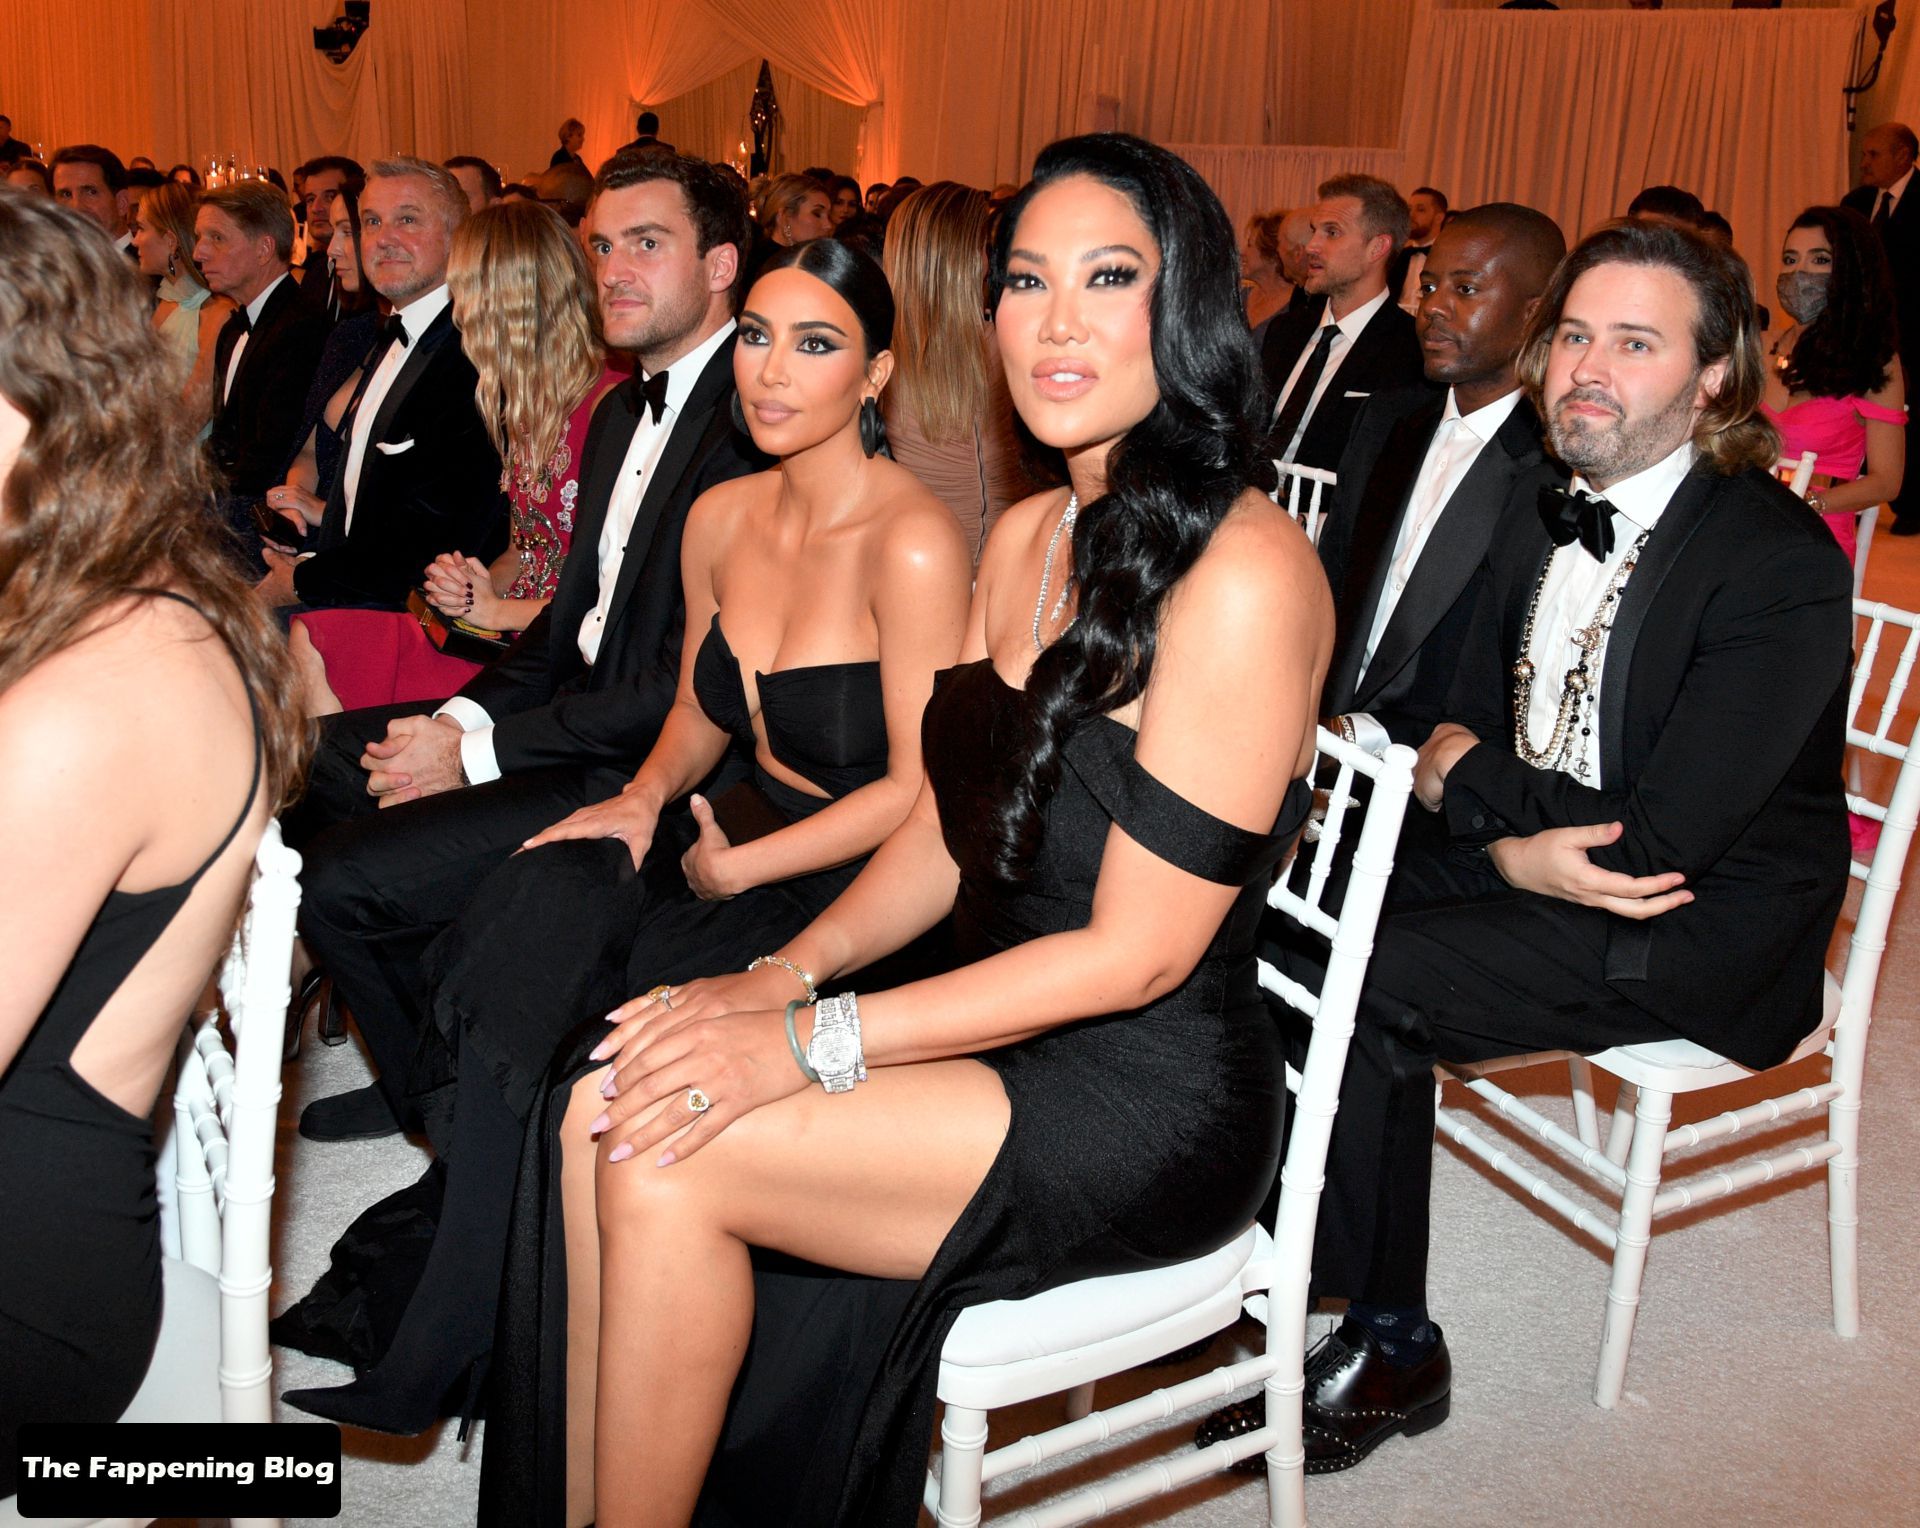 Kim-Kardashian-Sexy-The-Fappening-Blog-19.jpg